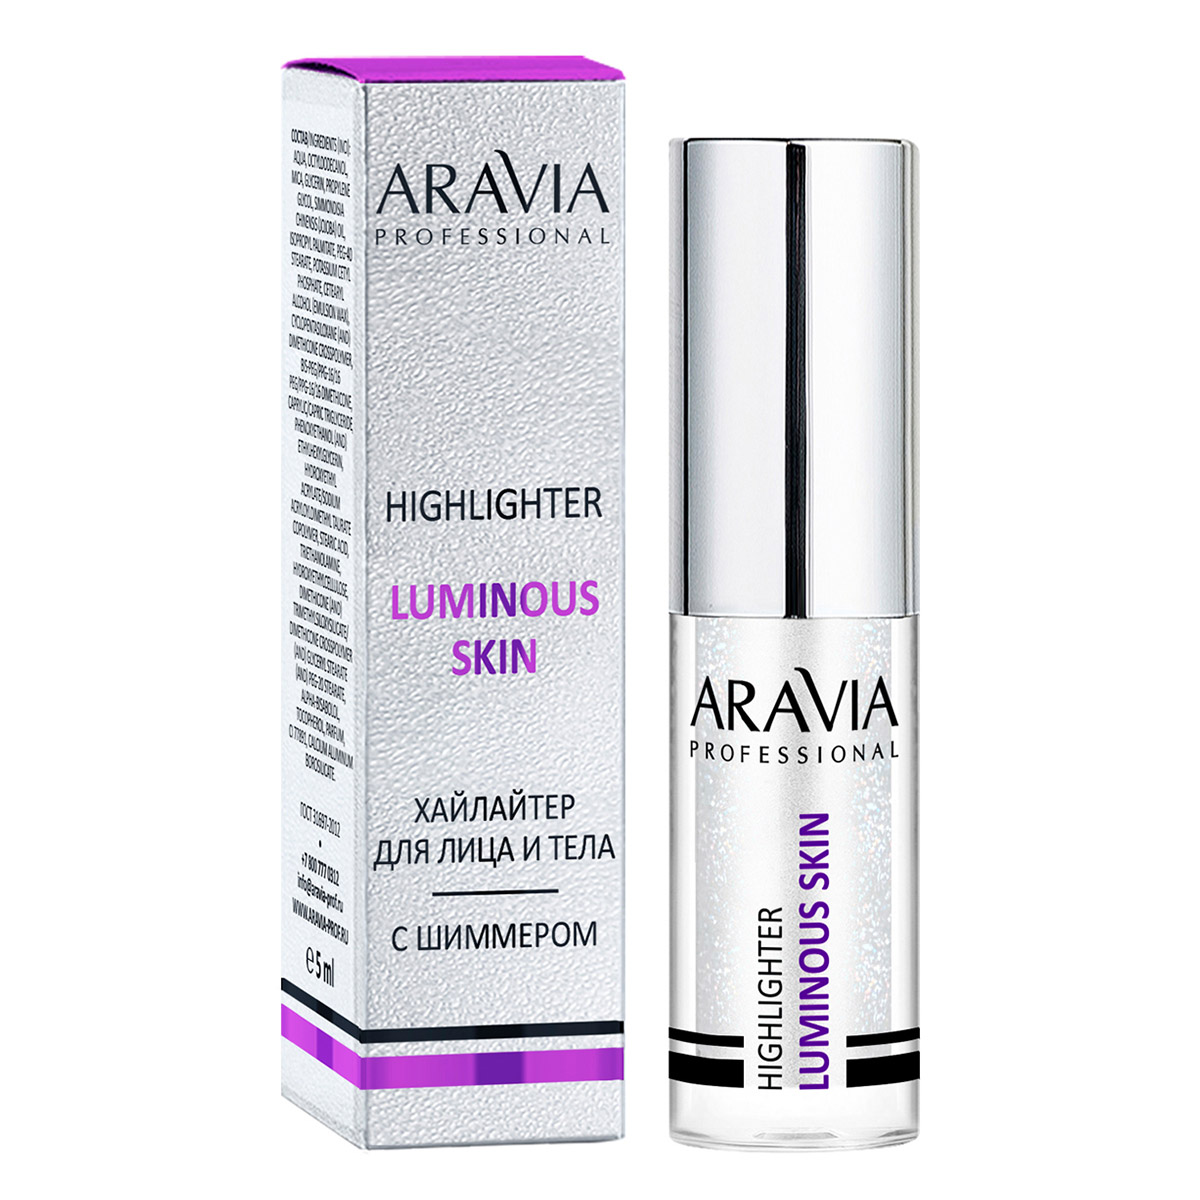 Aravia Professional Хайлайтер с шиммером жидкий для лица и тела Luminous Skin, 5 мл (Aravia Professional, Декоративная косметика) фото